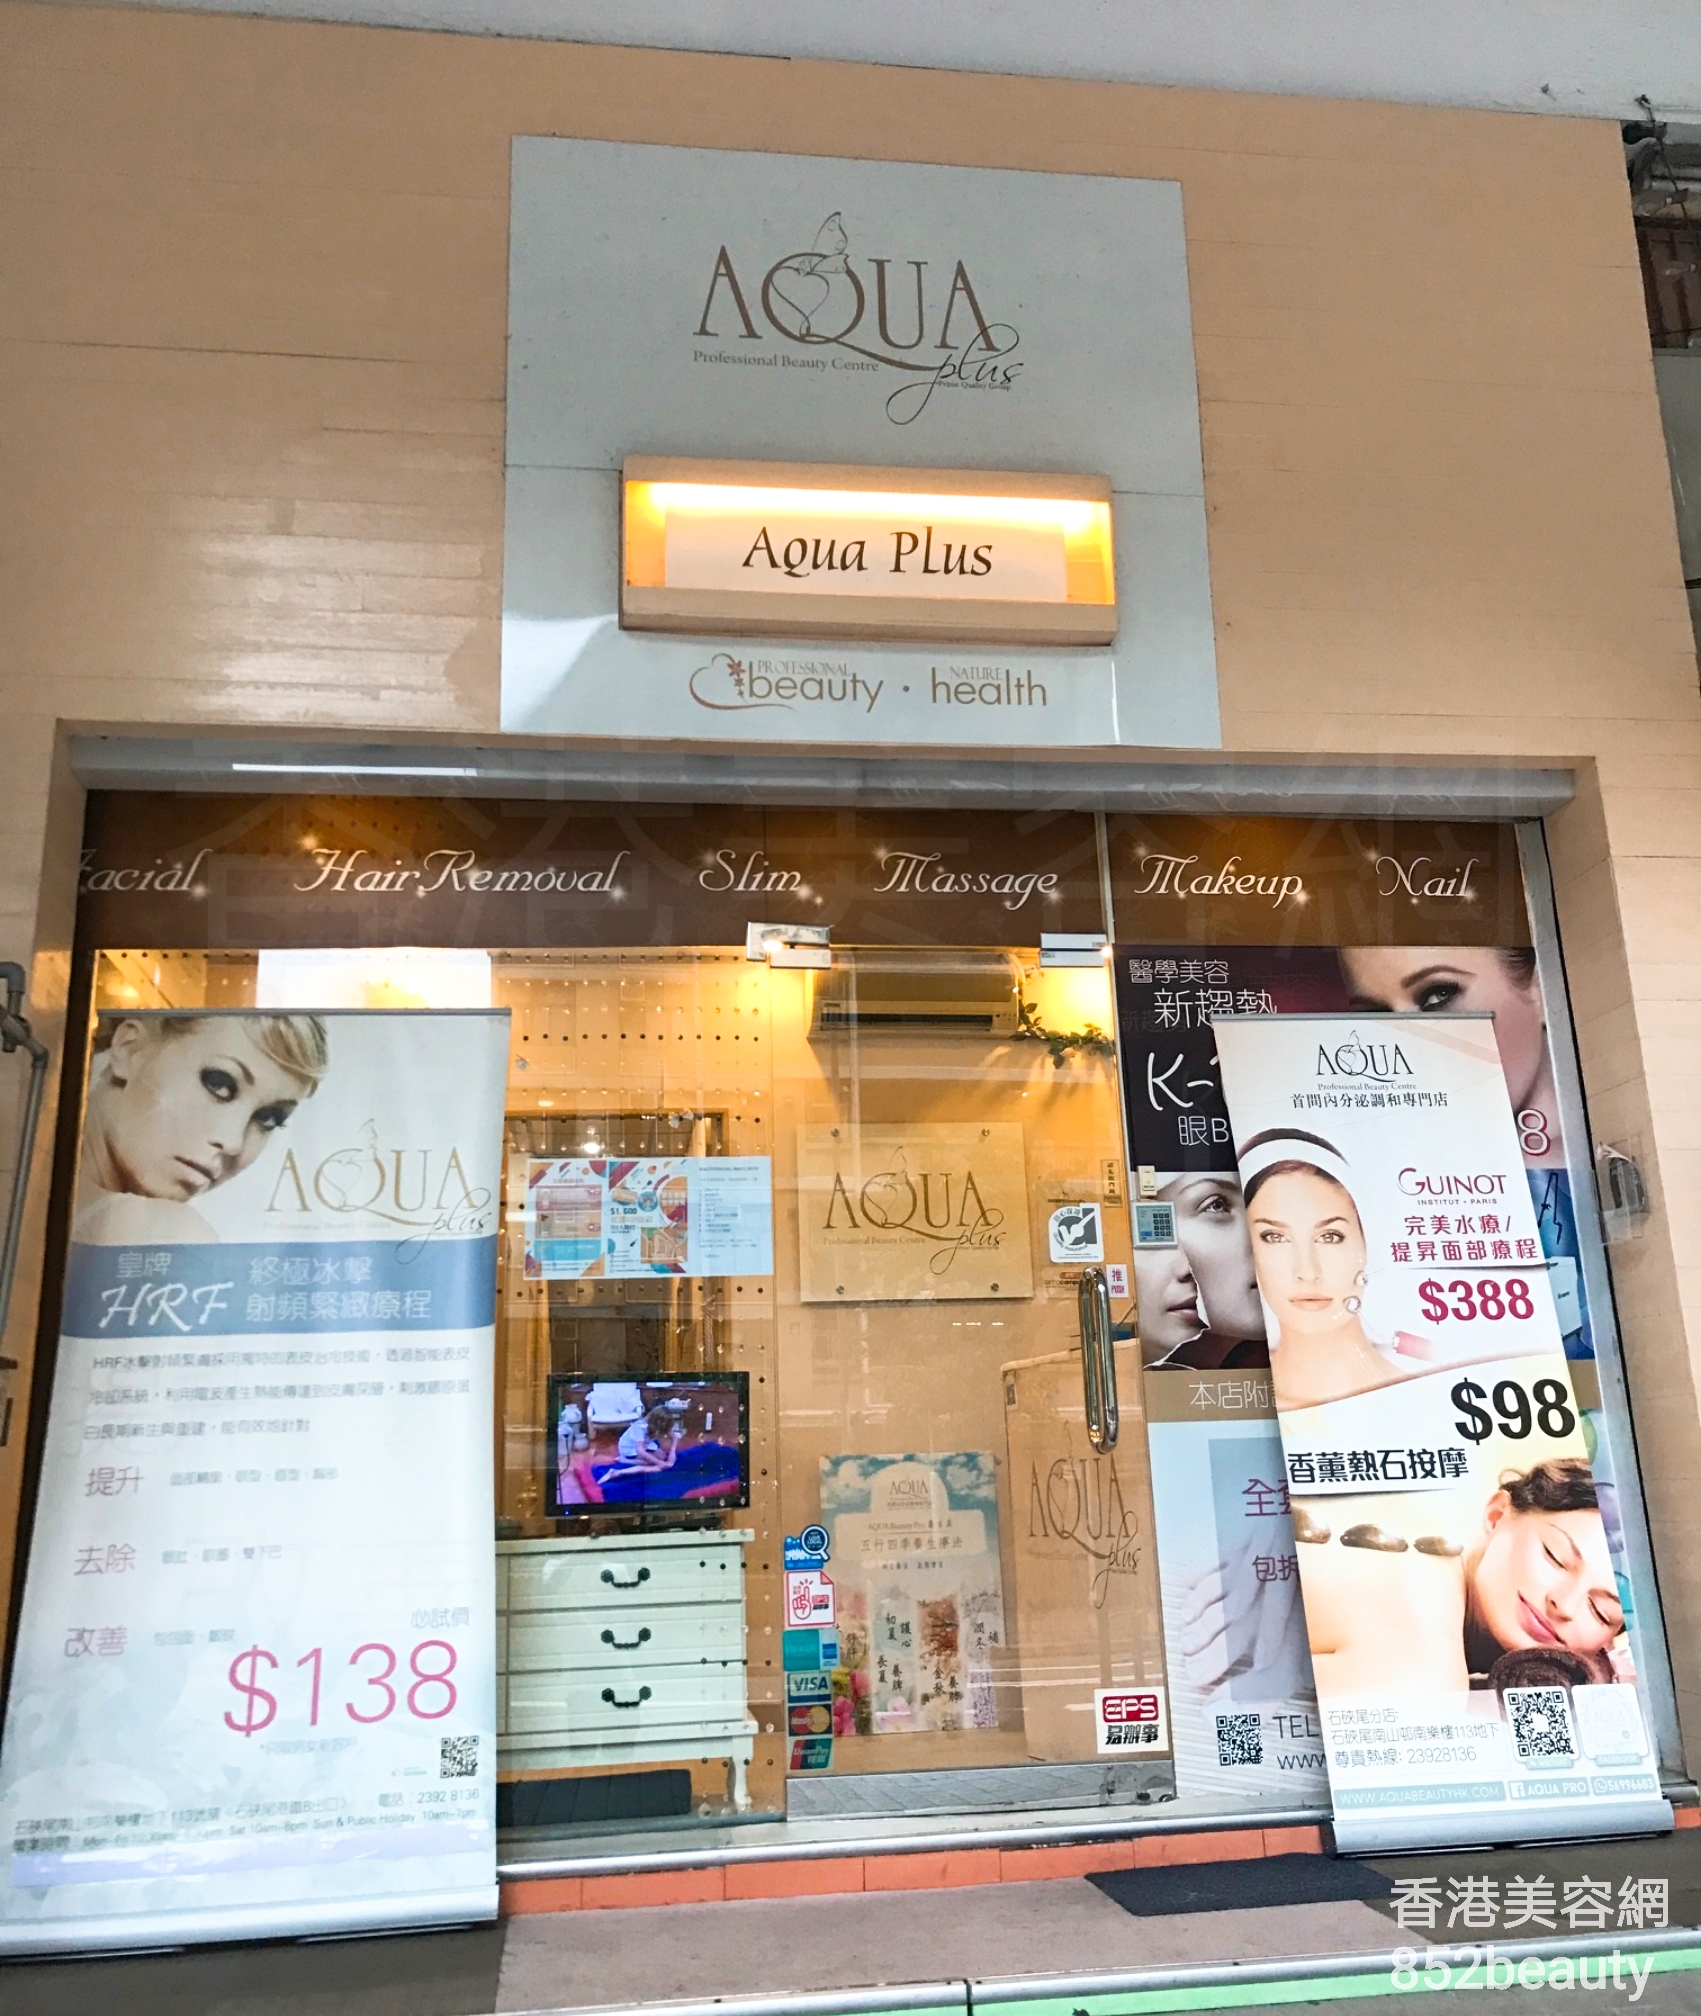 按摩/SPA: AQUA Professional Beauty Centre (石硤尾分店)